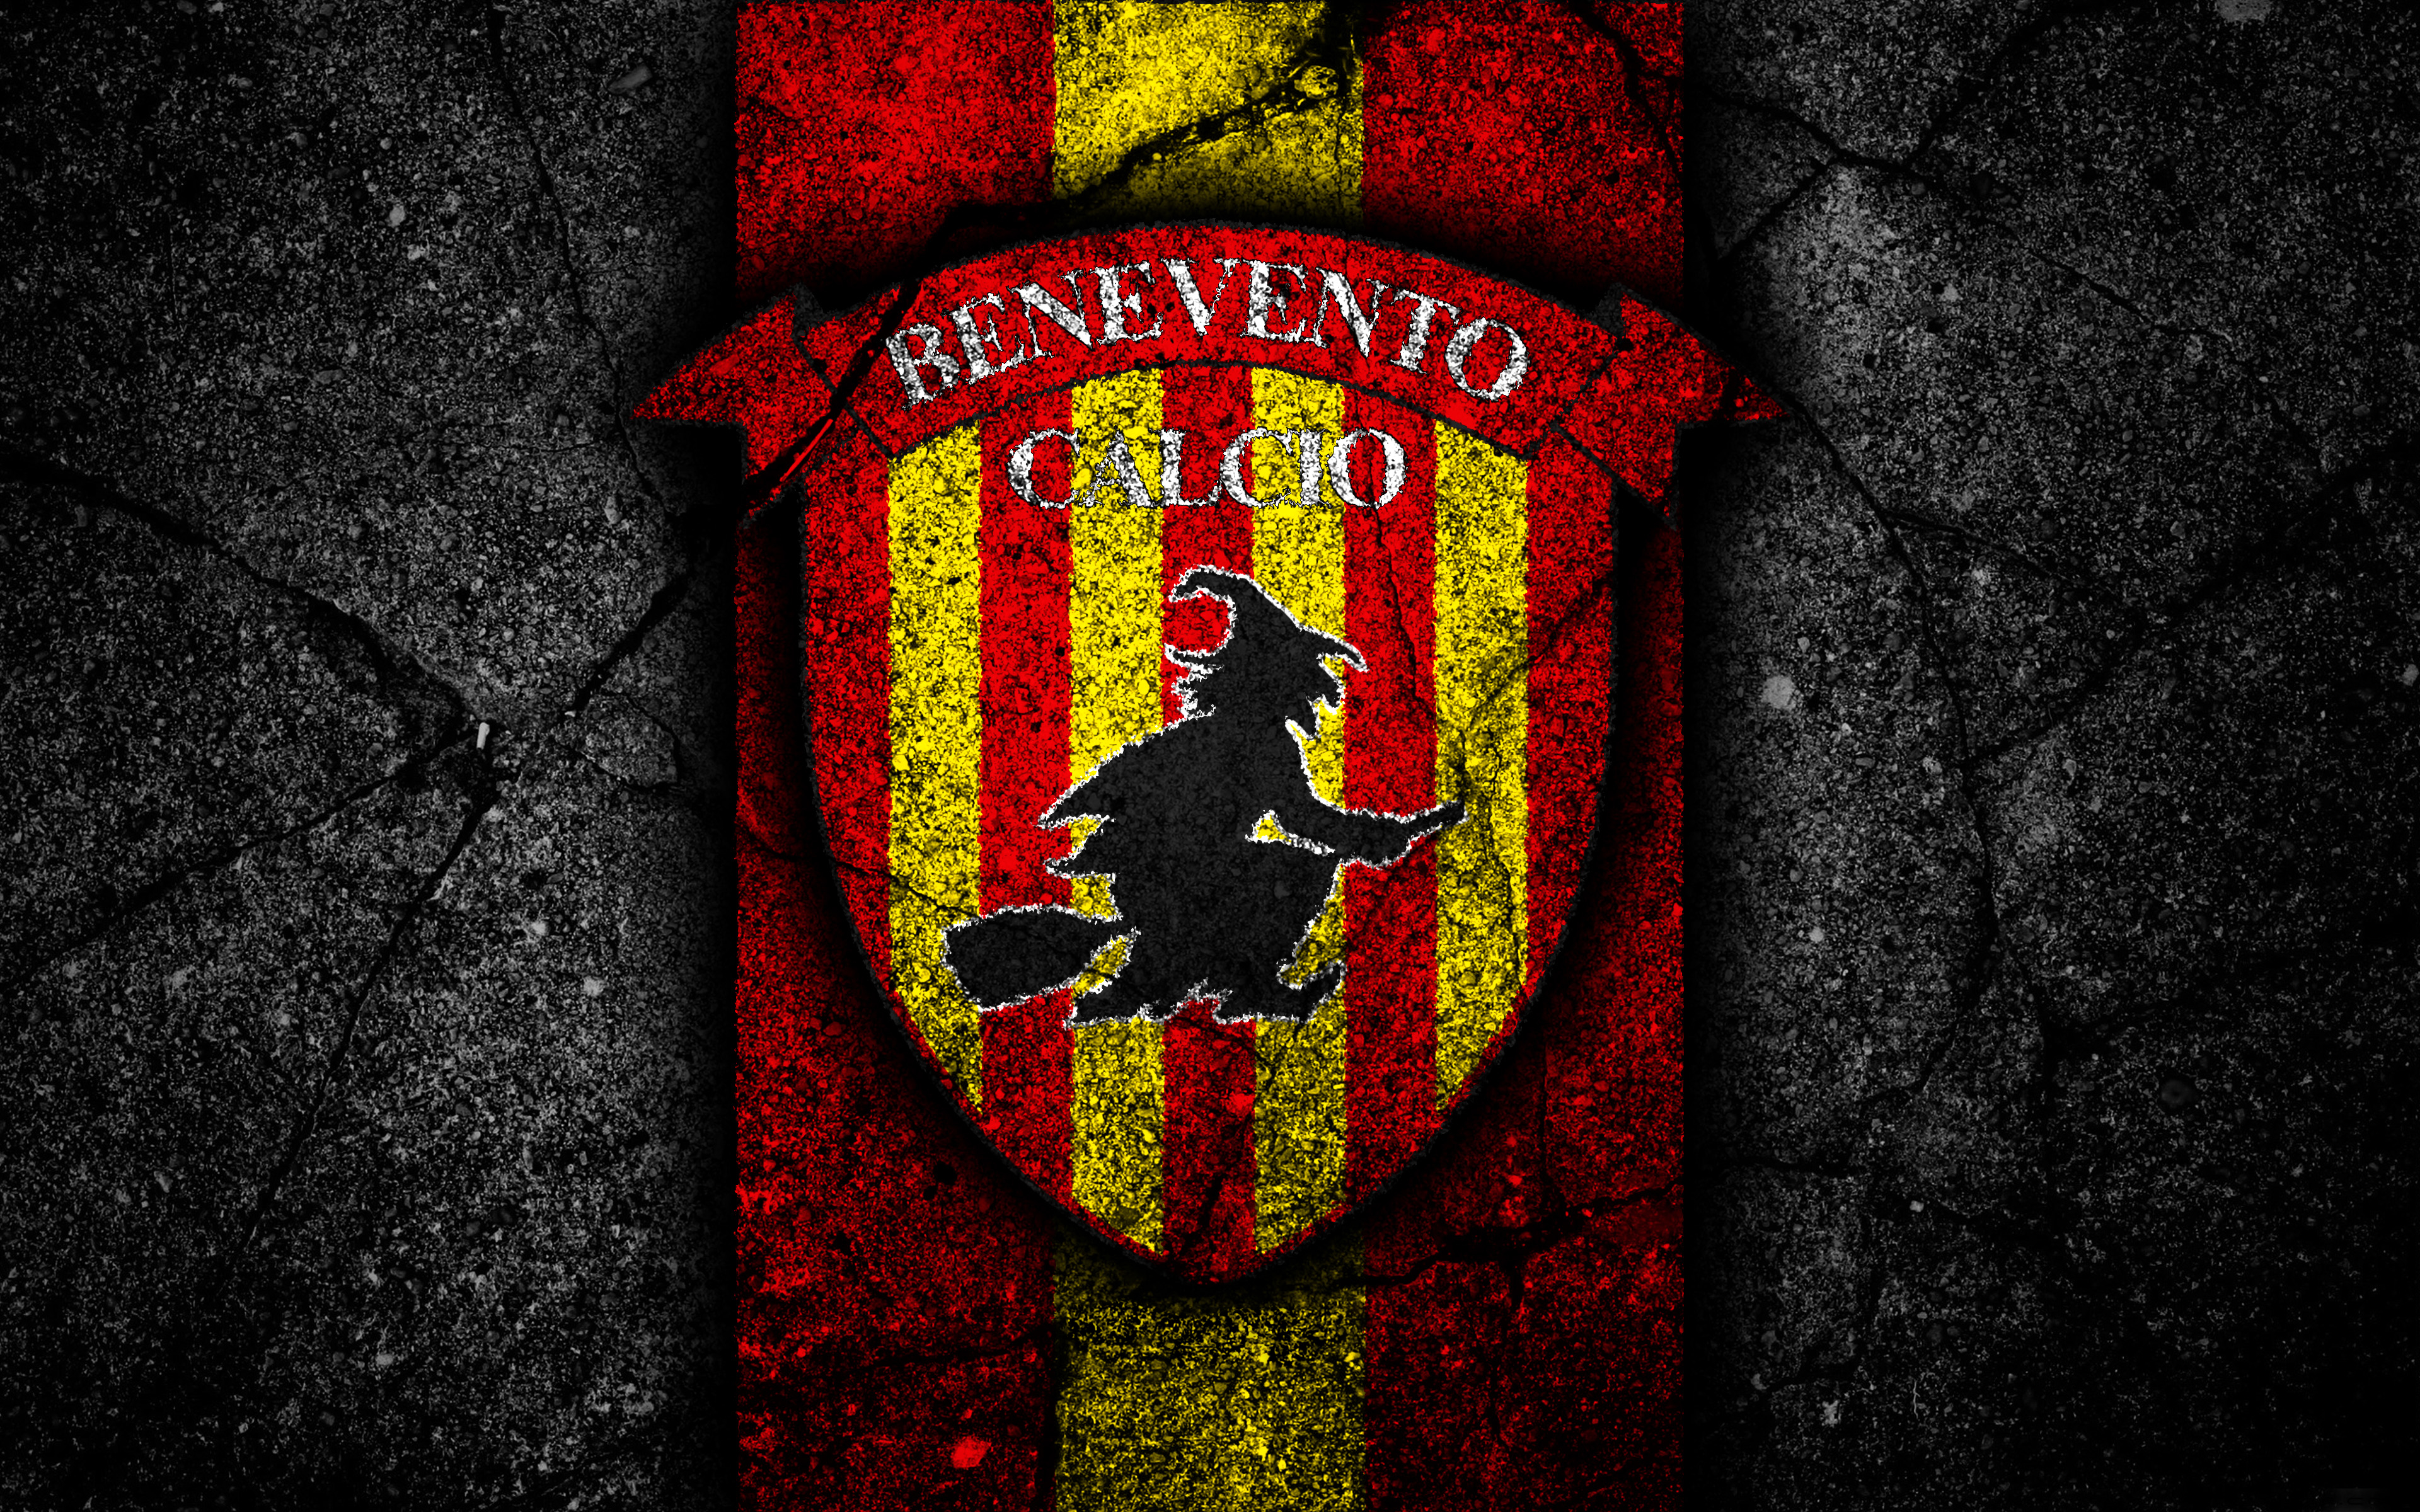 Sports Benevento Calcio HD Wallpaper | Background Image